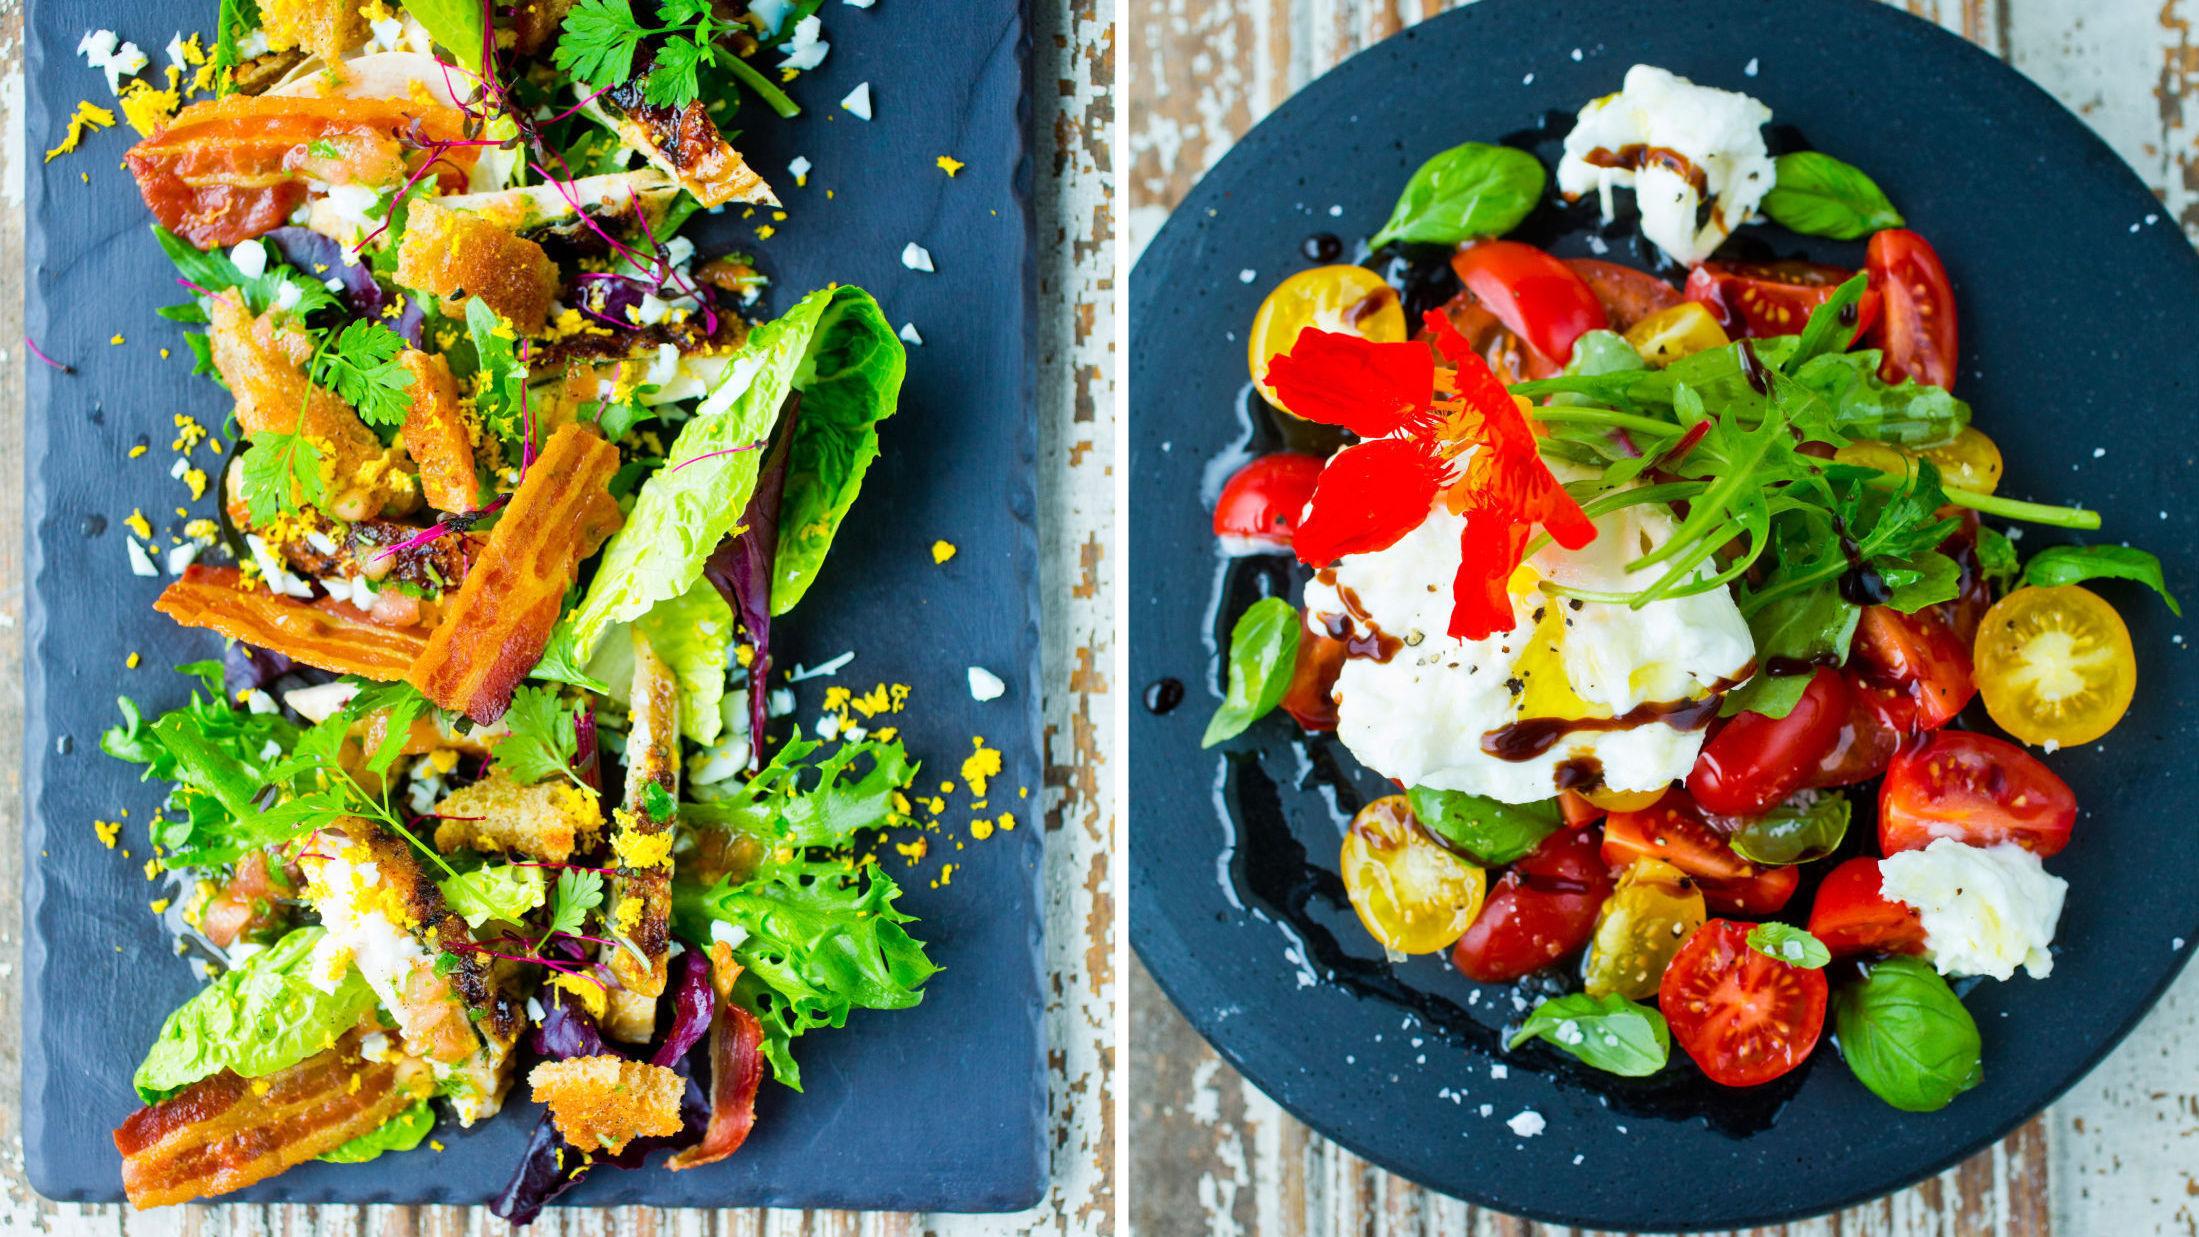 HELT ENKELT: Nyt vårdagene med enkle, friske og vårlige salater i alle varianter. Foto: Sara Johannessen/VG